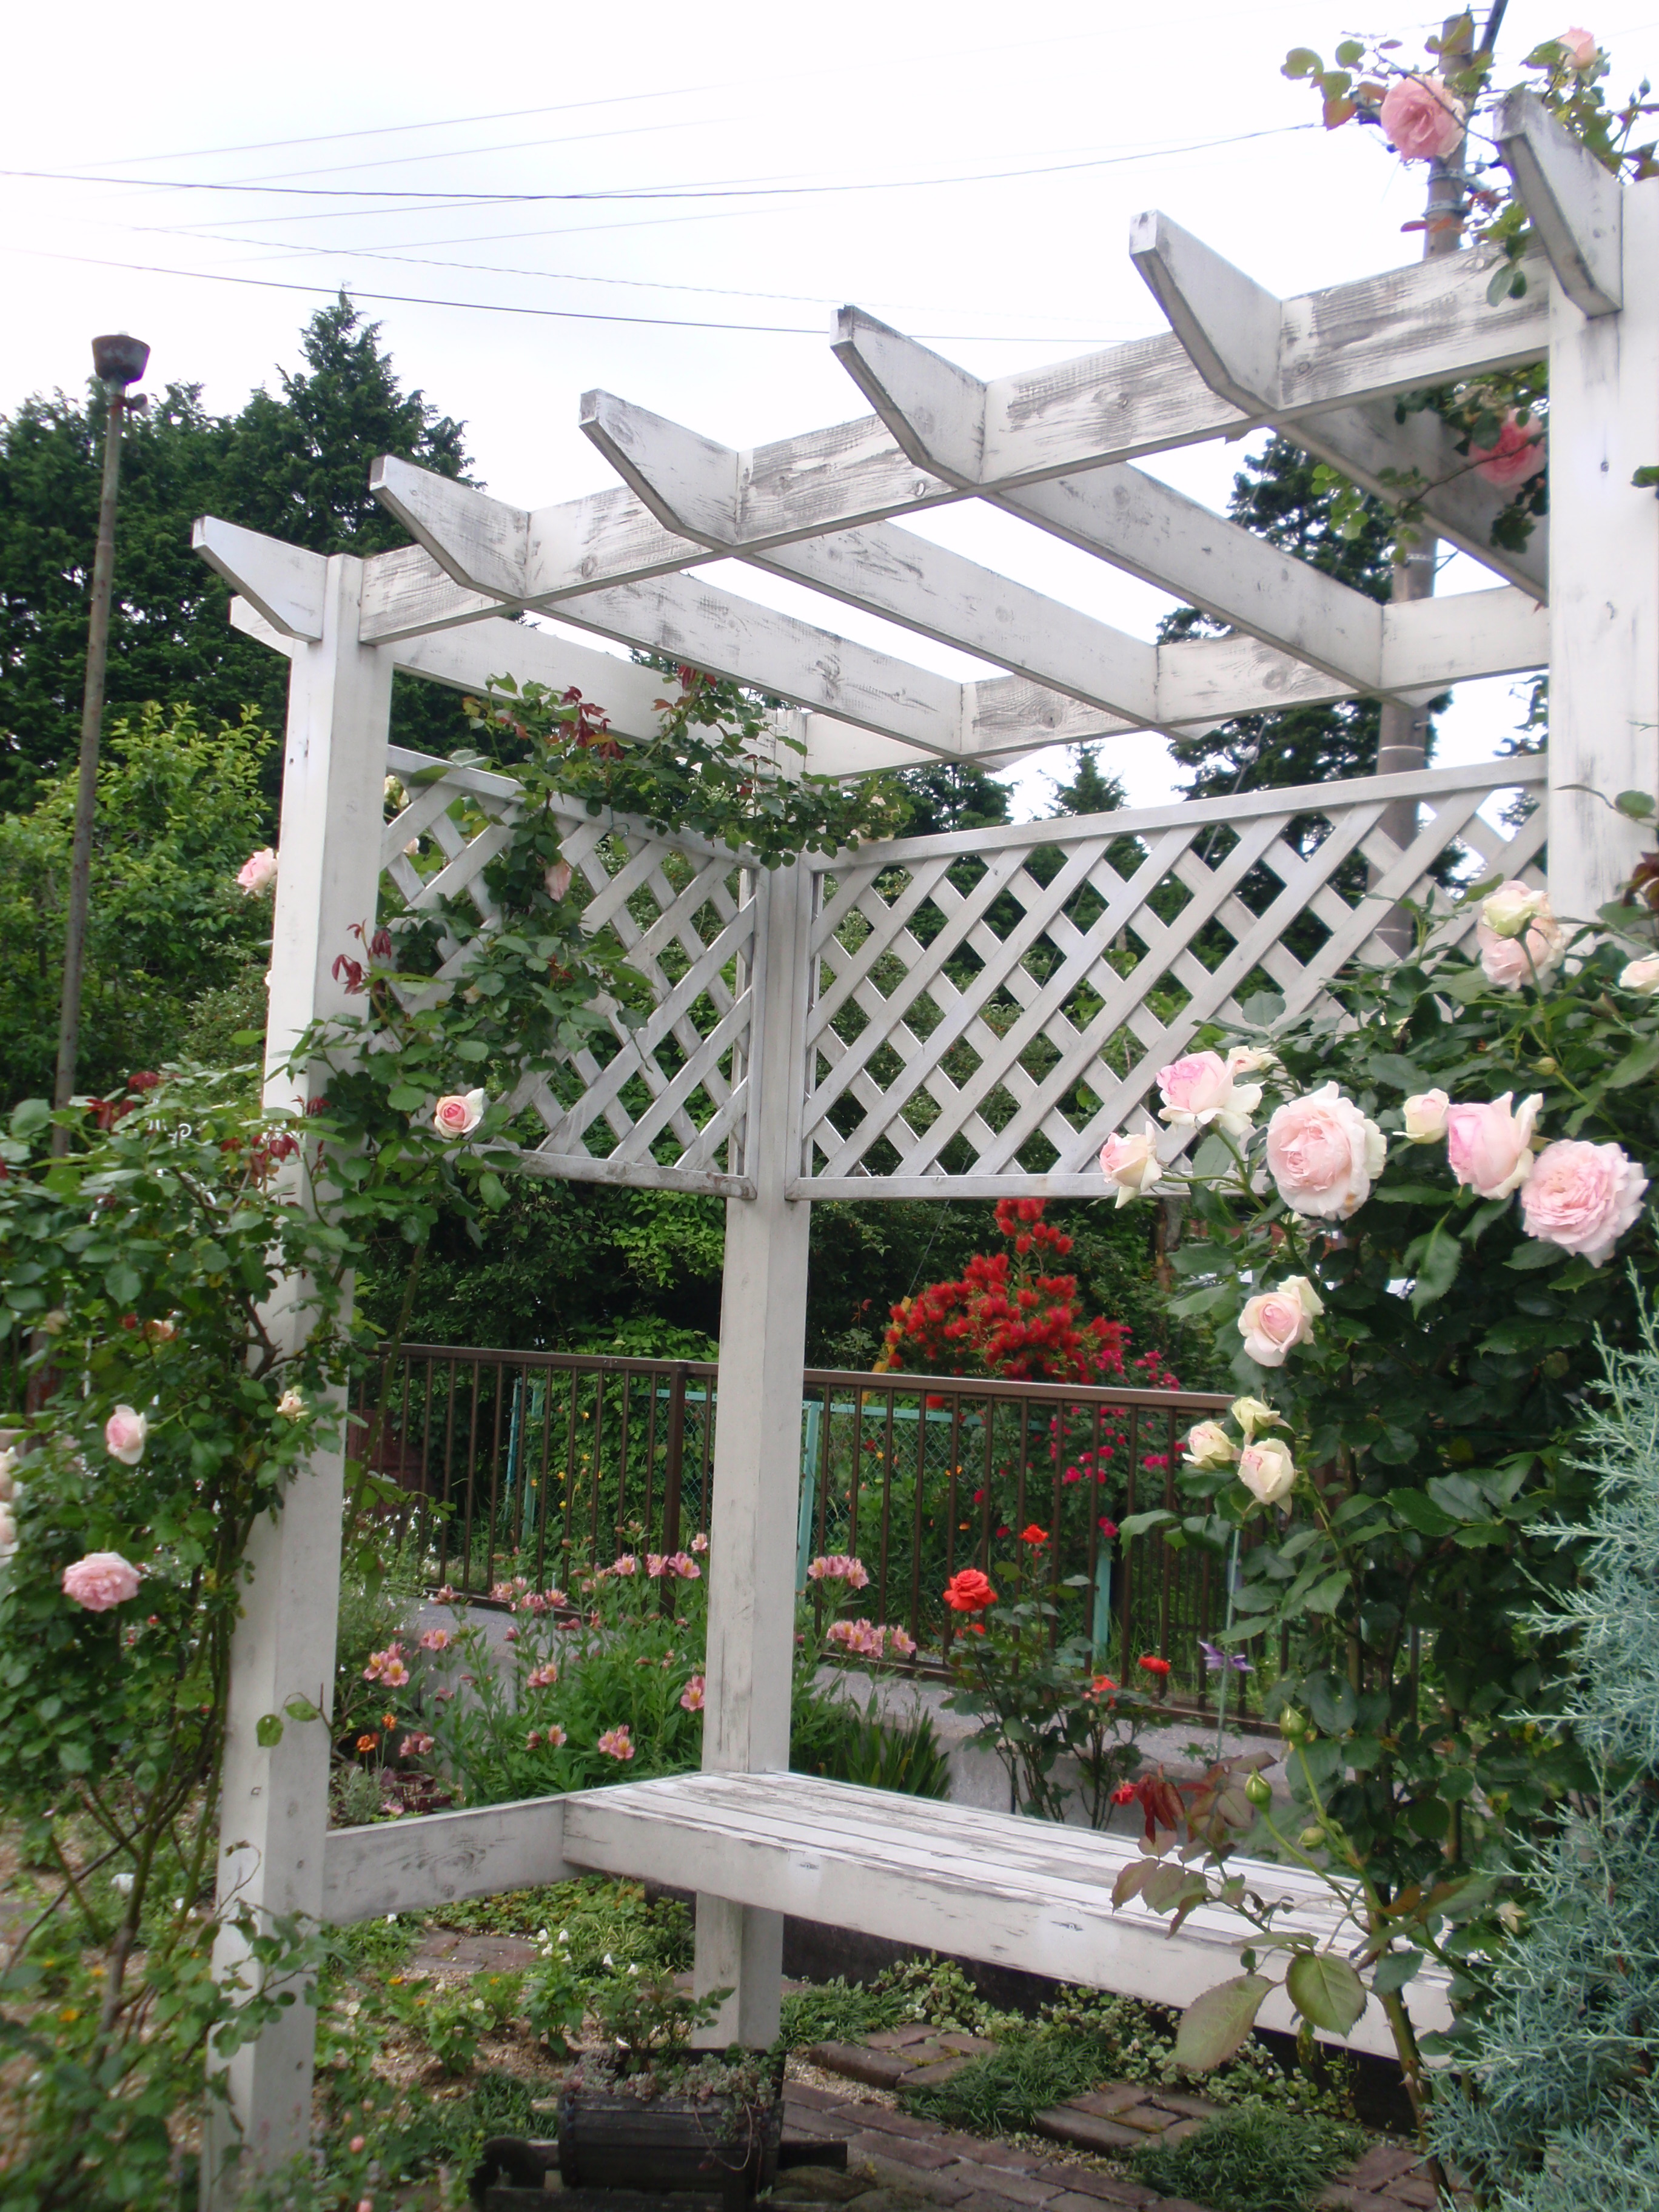 お花いっぱいのイングリッシュガーデン リバーズランドスケープデザイン ガーデンプラット